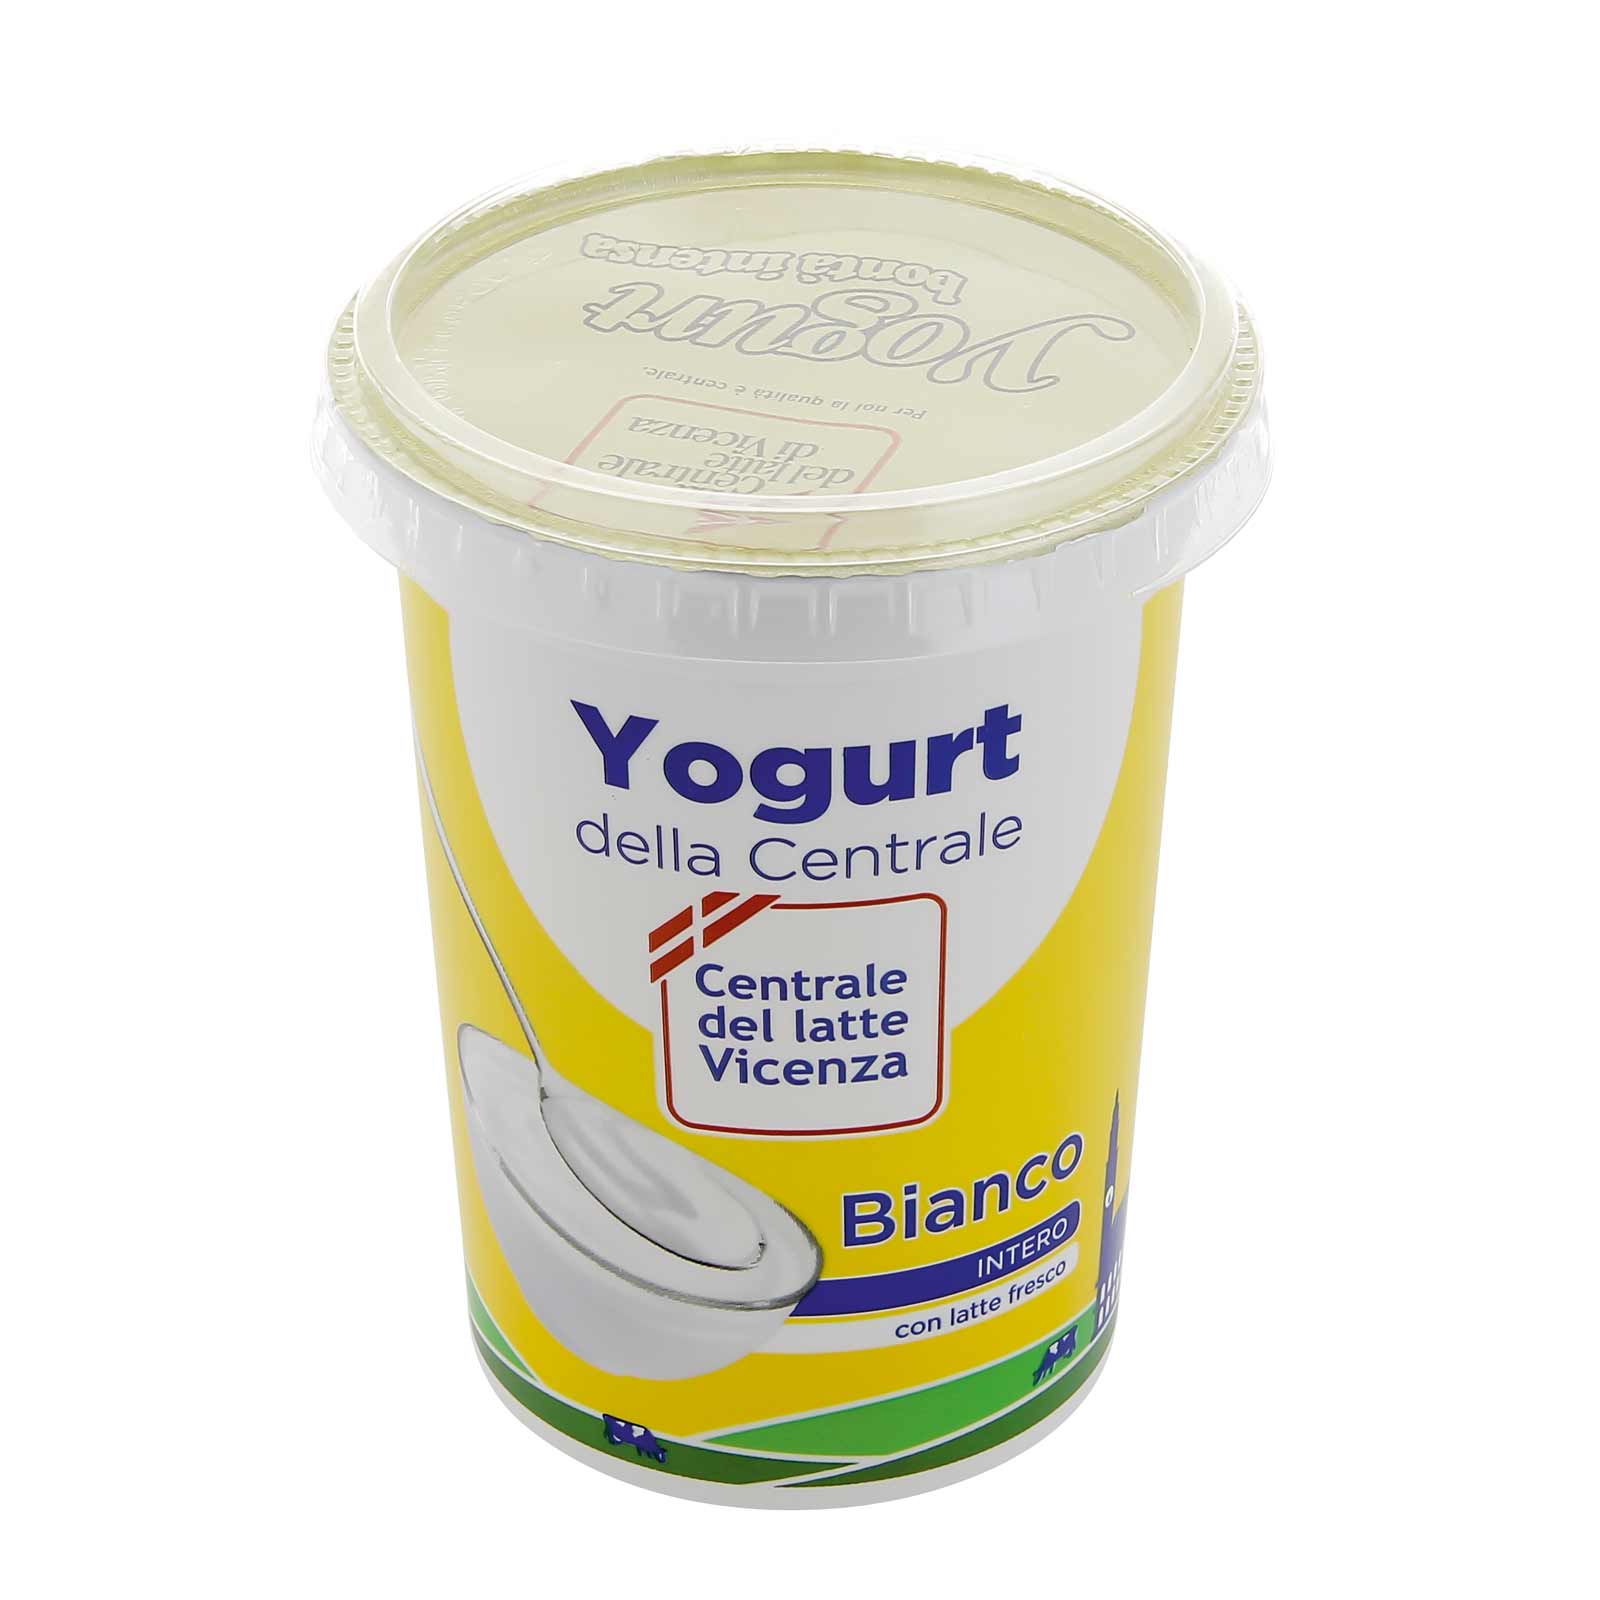 Yogurt Intero Vicenza - Bianco - Centrale del Latte di Vicenza